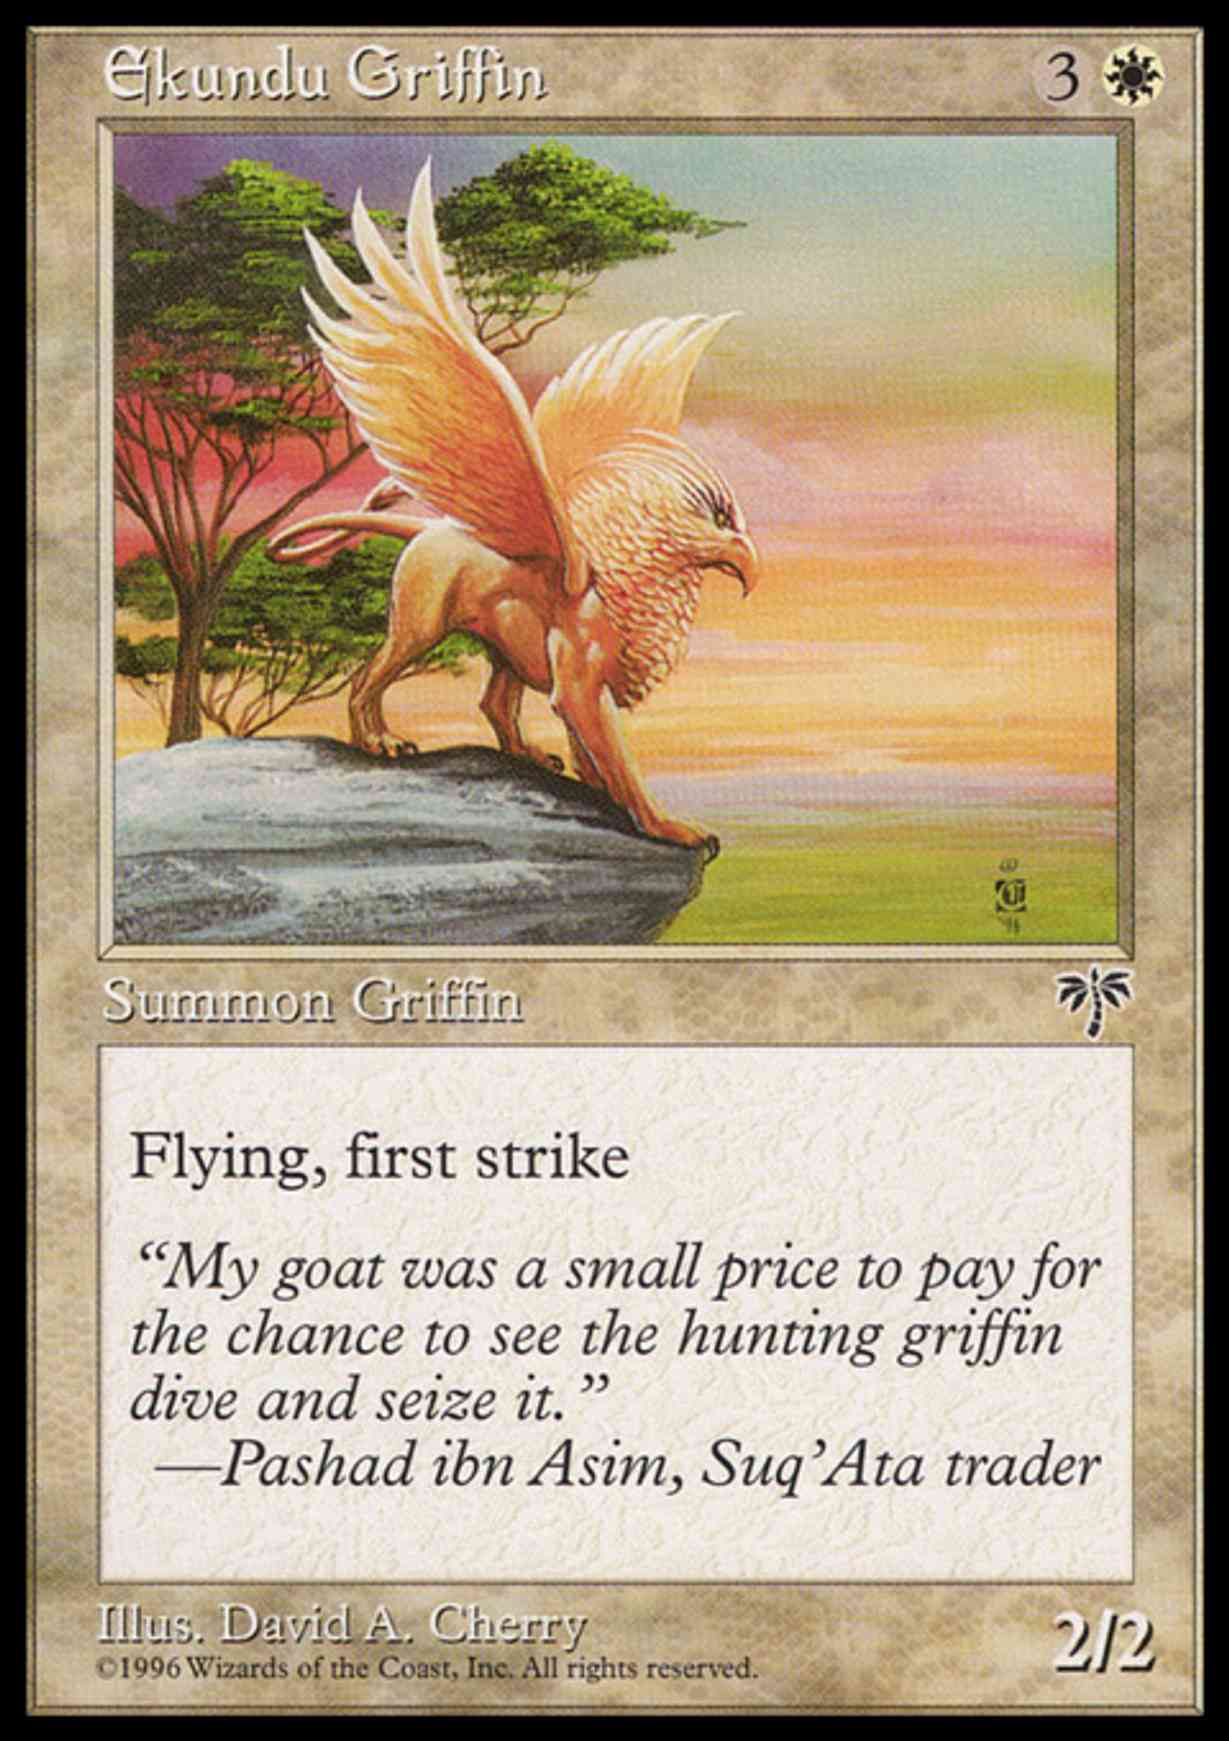 Ekundu Griffin magic card front